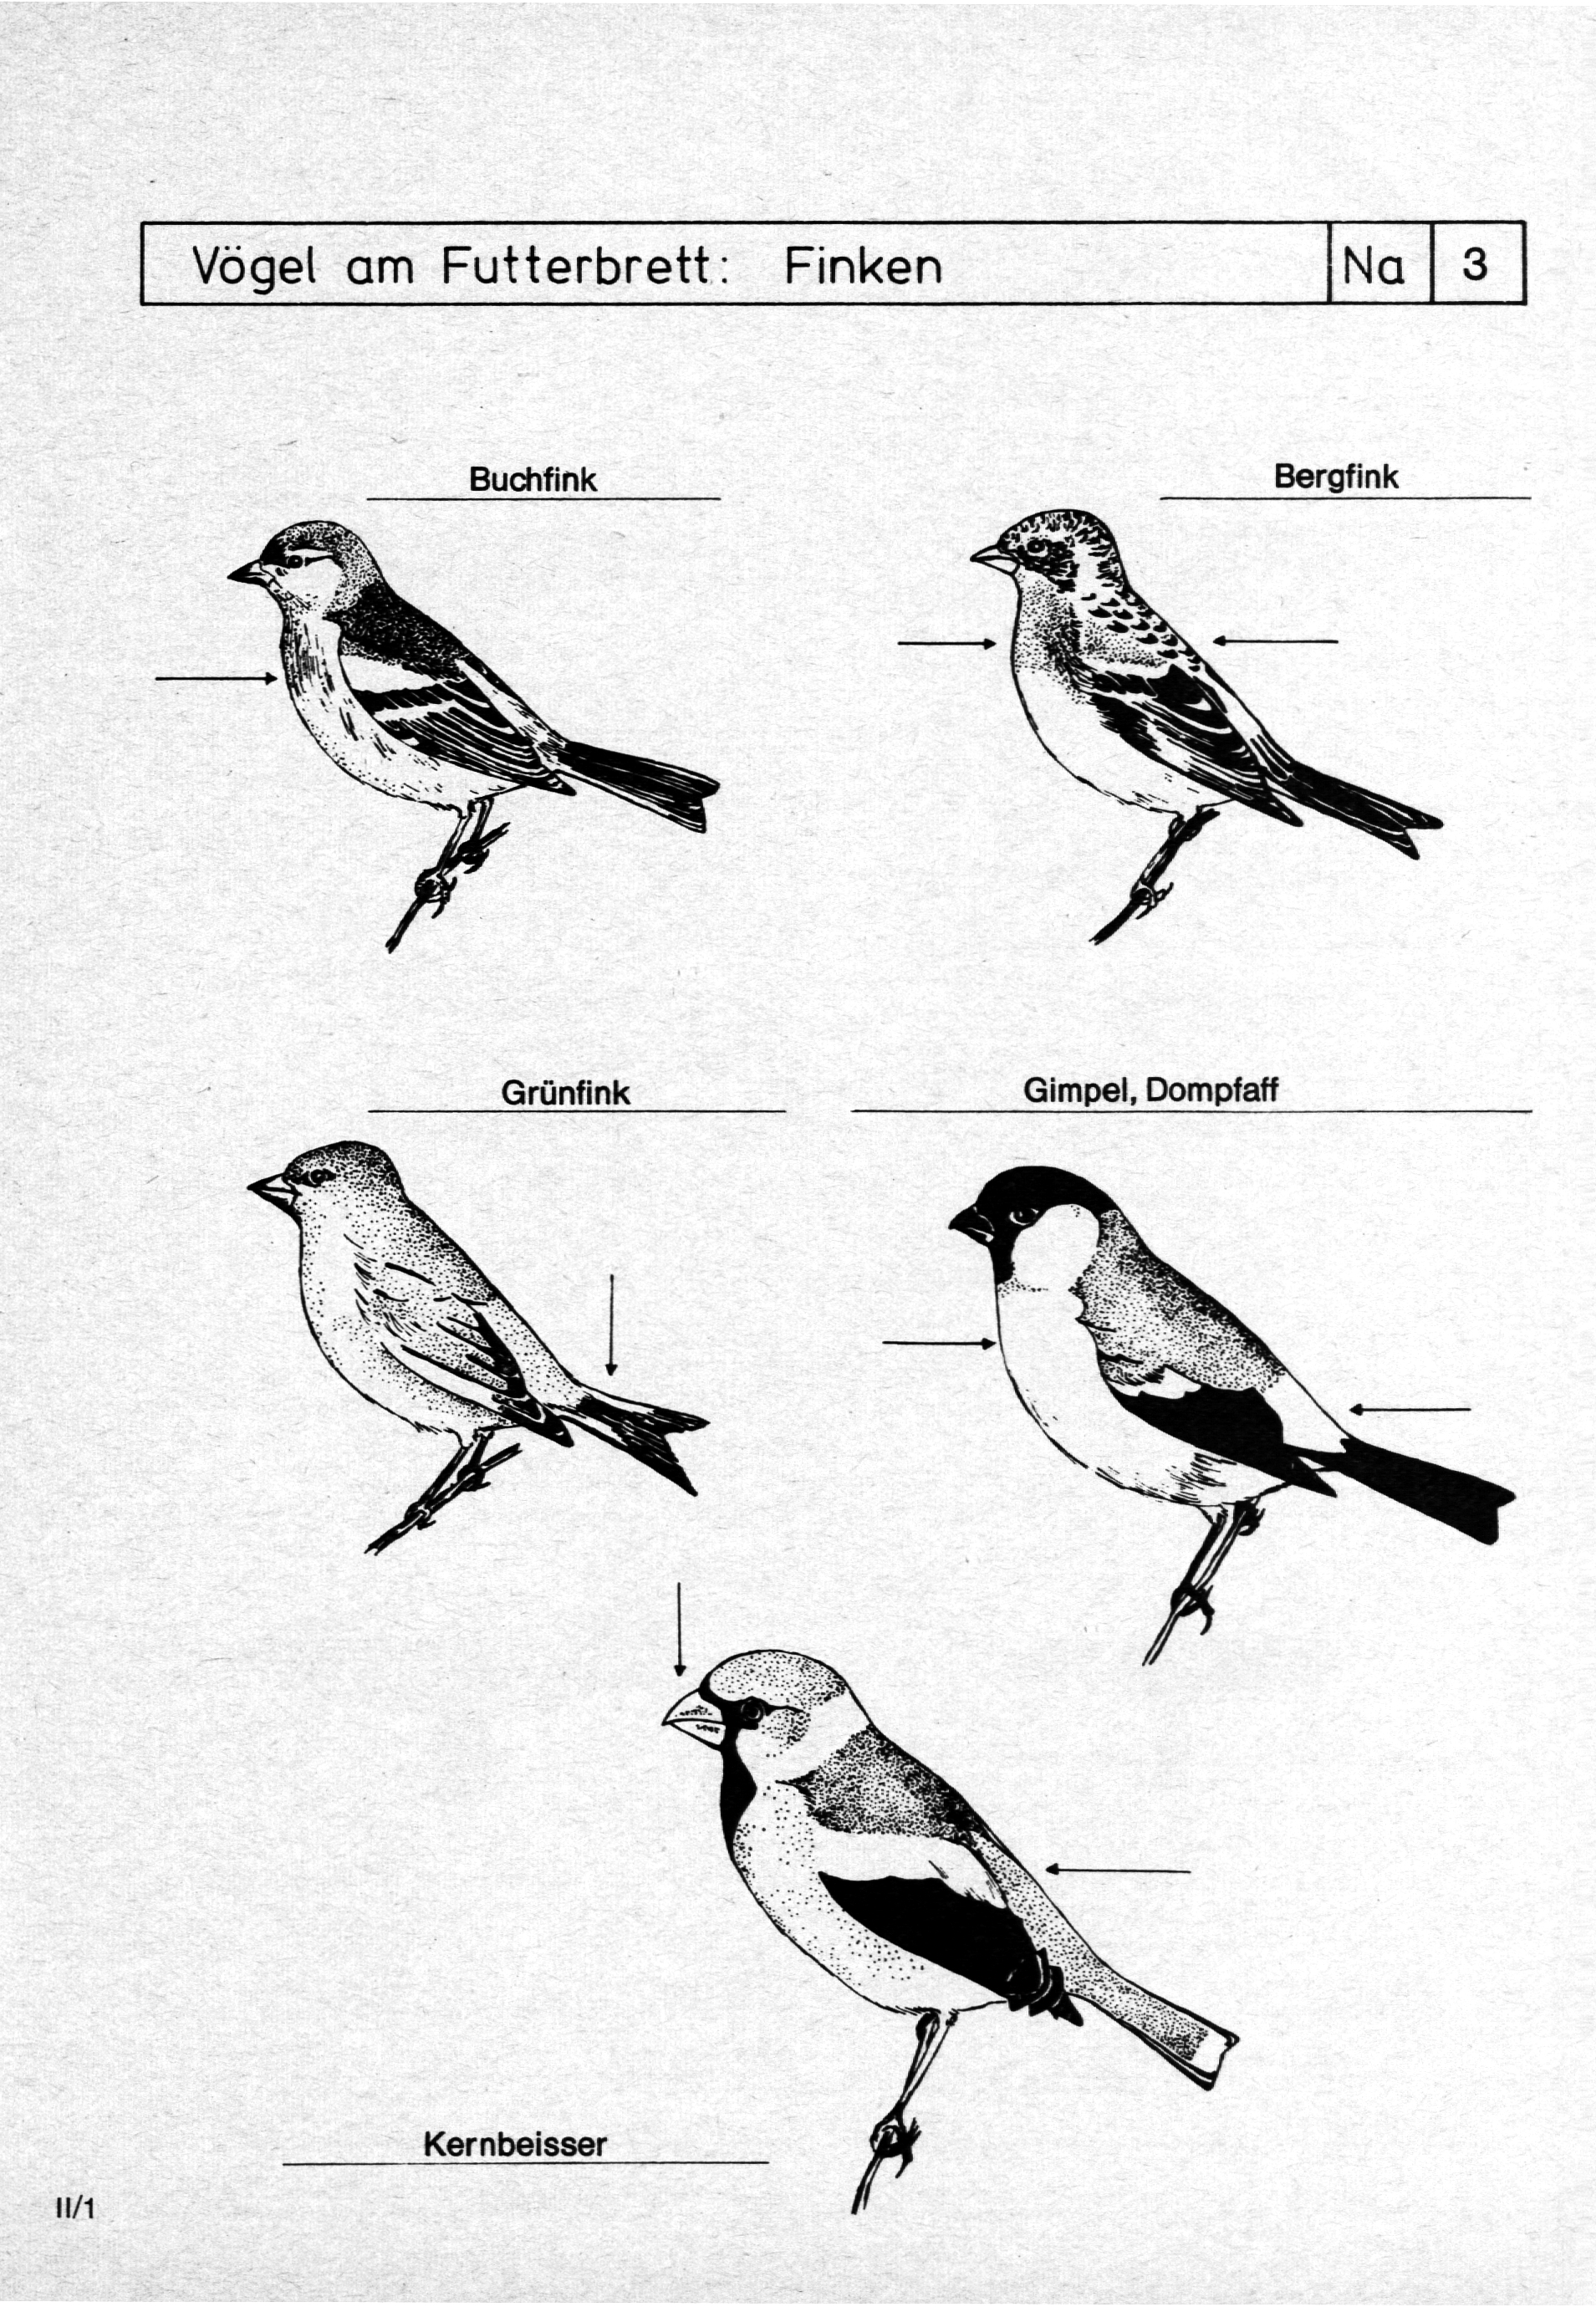 Vögel am Futterbrett: Buchfink Grünfink